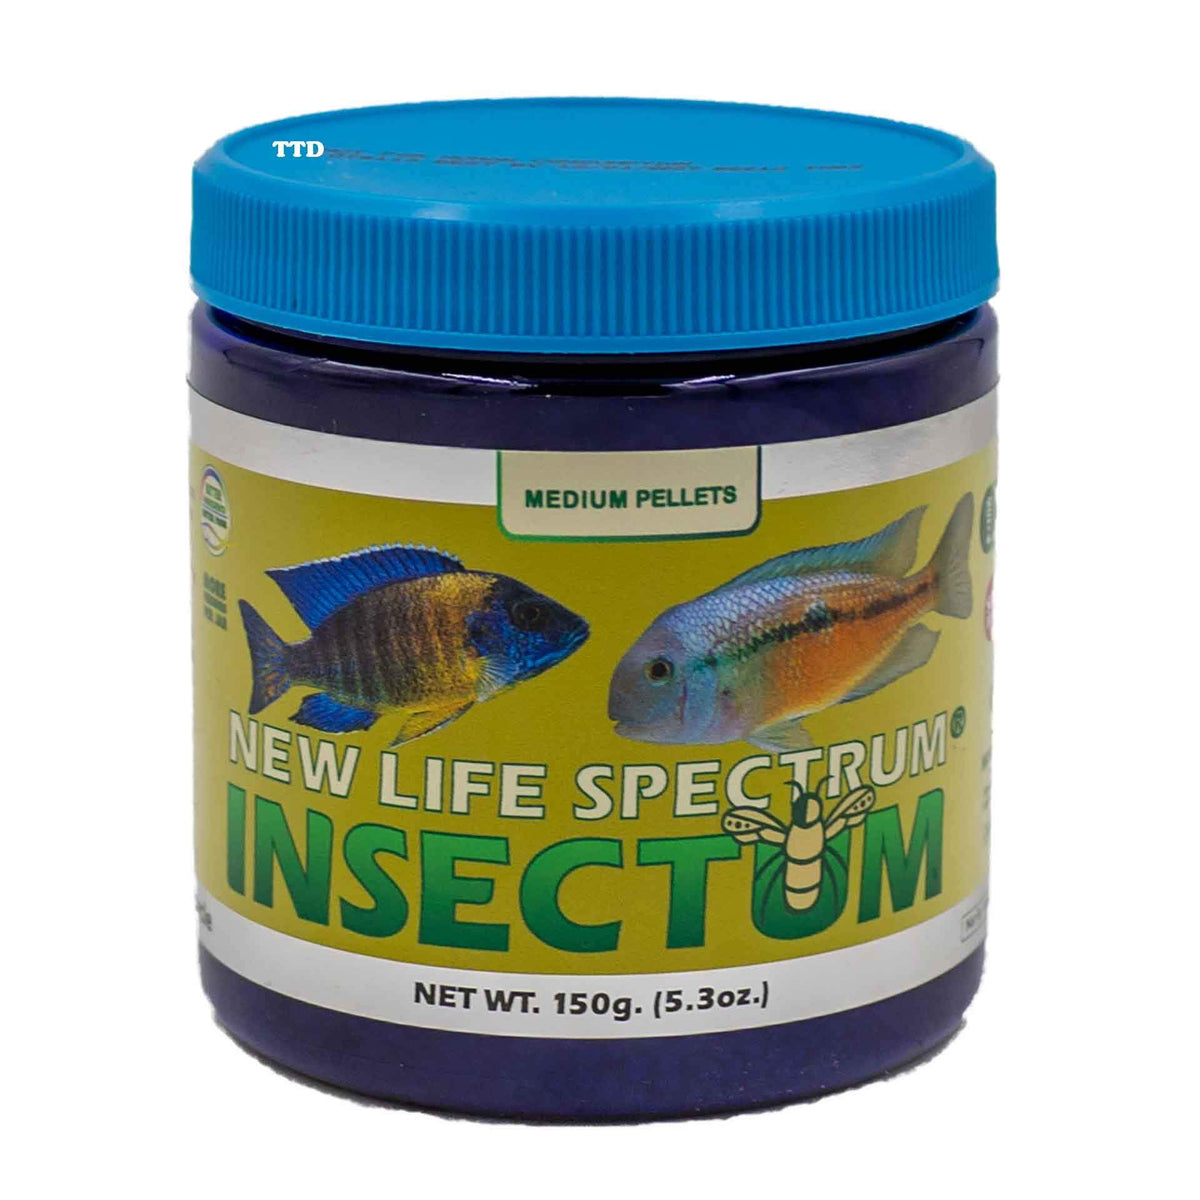 New Life Spectrum Insectum Medium 150g - Sinking Pellet 2-2.5mm